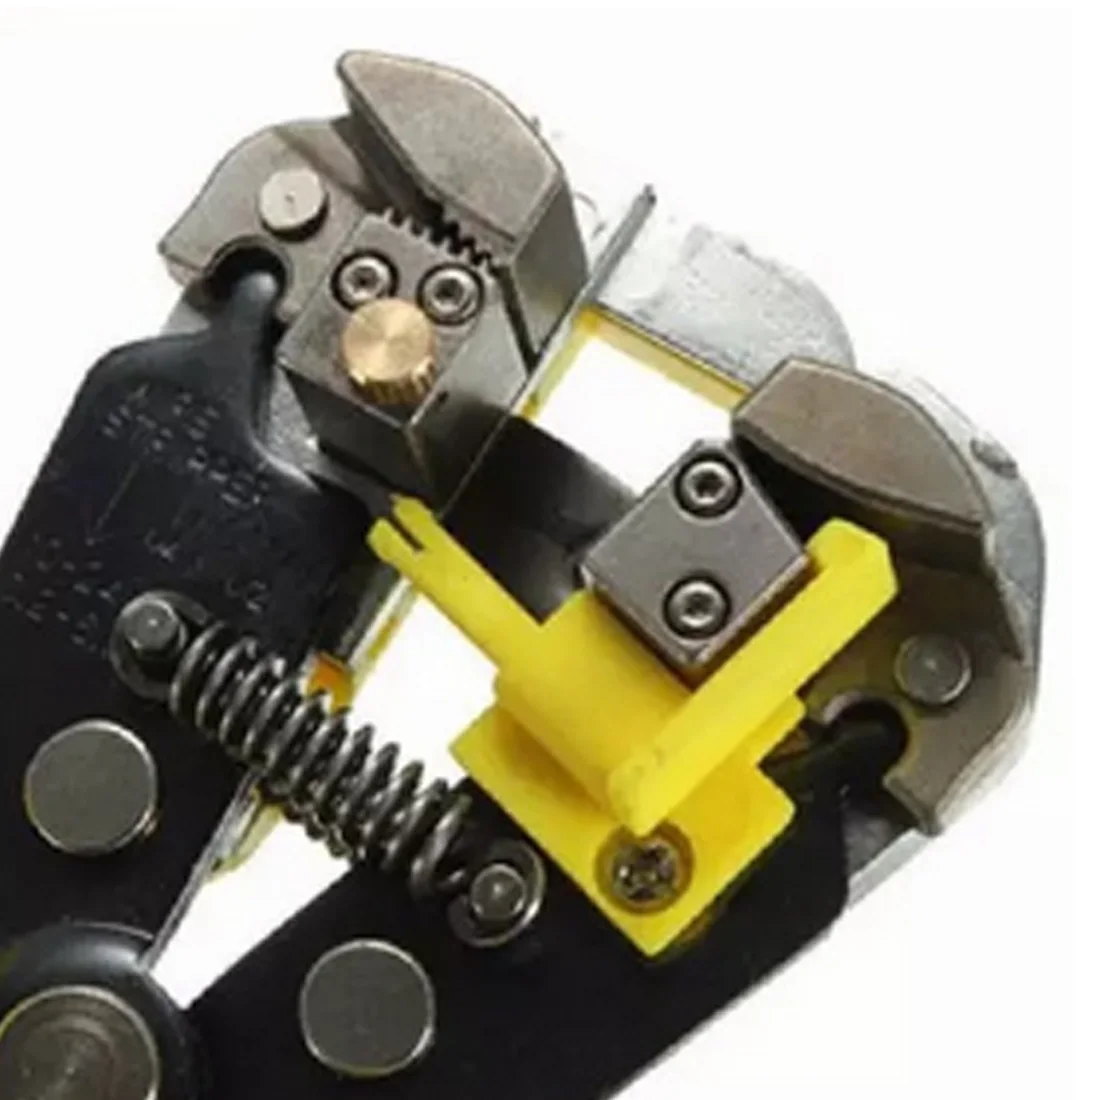 0,2-6,0 мм обжимной инструмент для кабелей резак автоматический инструмент для зачистки проводов многофункциональные инструменты для зачистки обжимные клещи терминал